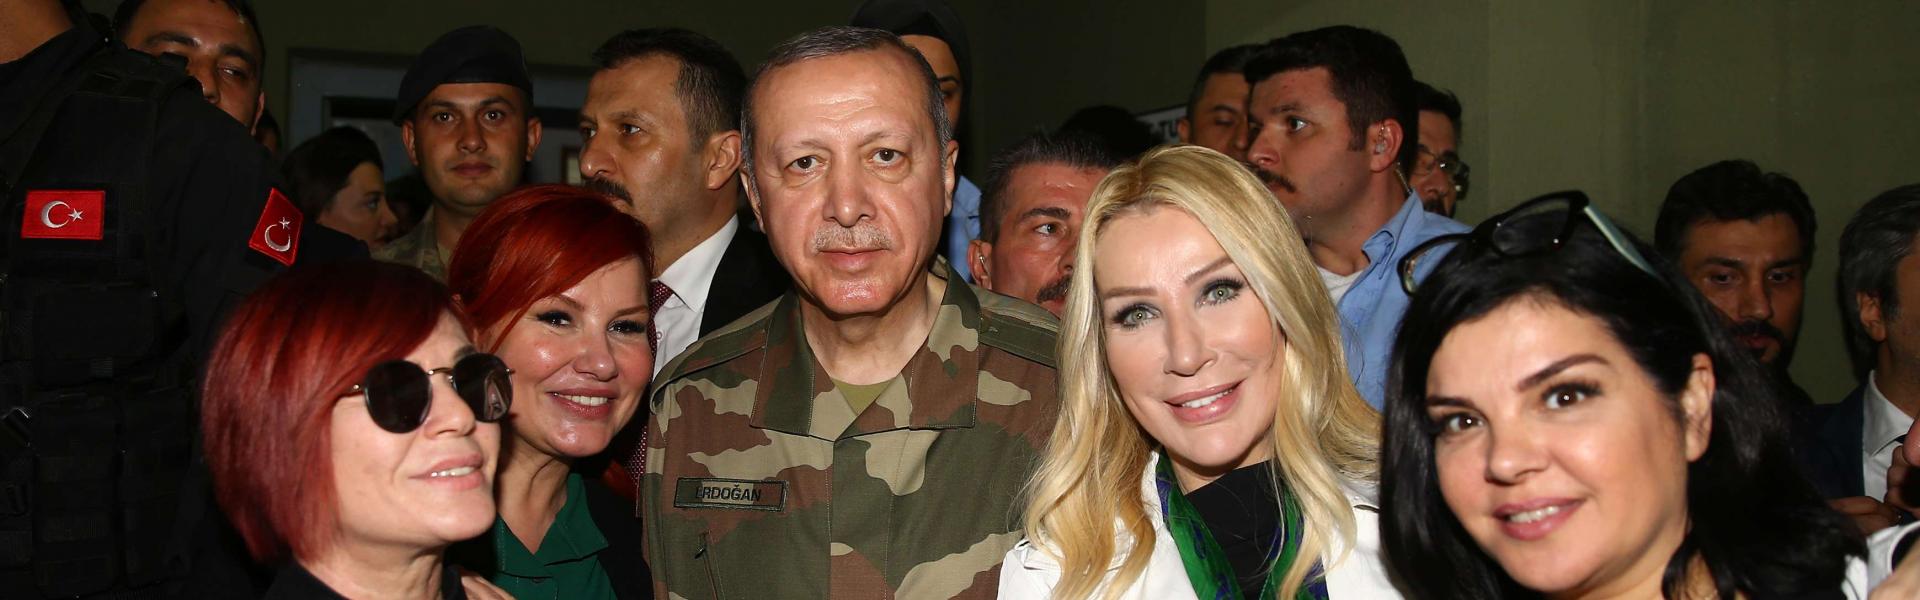 اردوغان مع المشاهير الأتراك